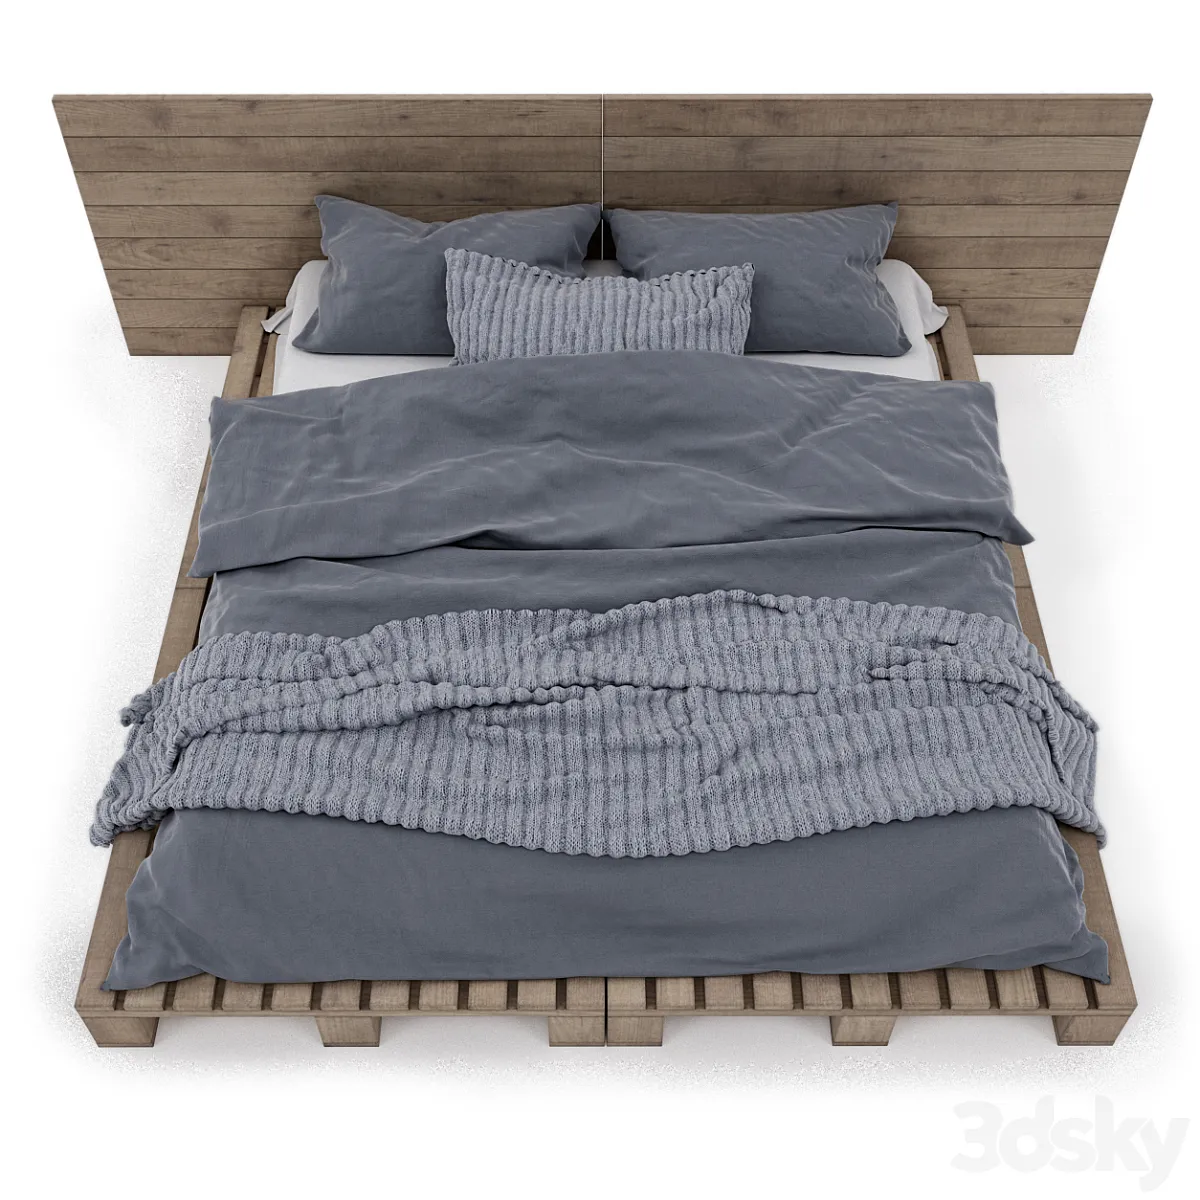 مدل سه بعدی تخت خواب مدرن 44 - 4